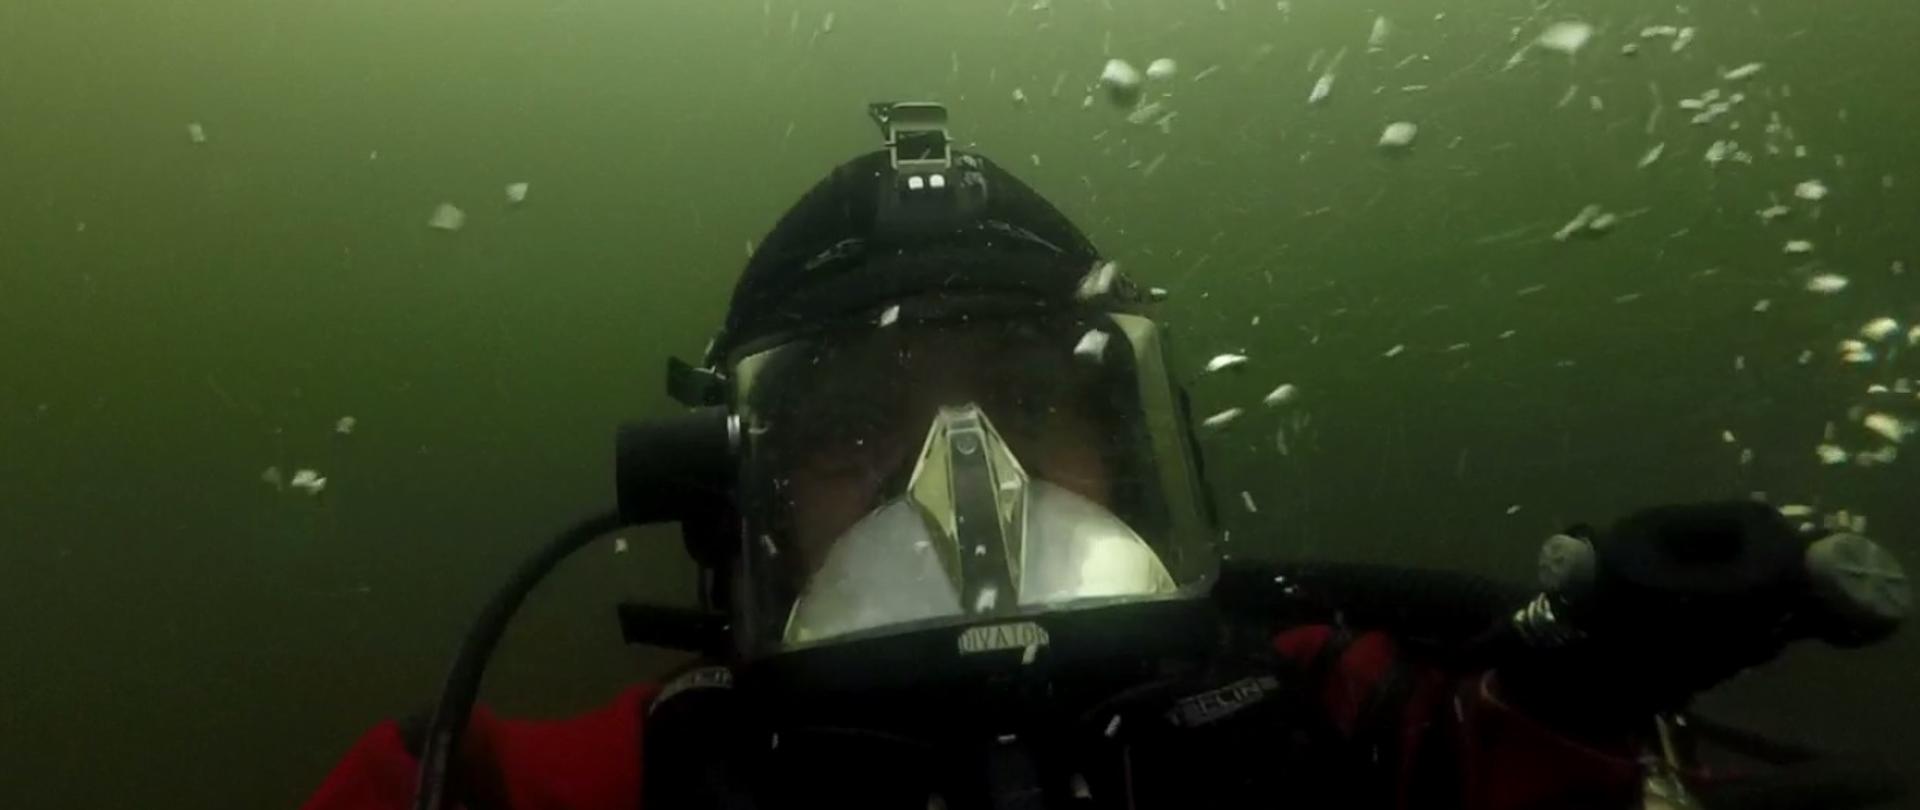 Zdjęcie przedstawia twarz nurka pod wodą. Strażak ma założoną maskę do nurkowania. Dookoła widoczne są pęcherzyki powietrza.